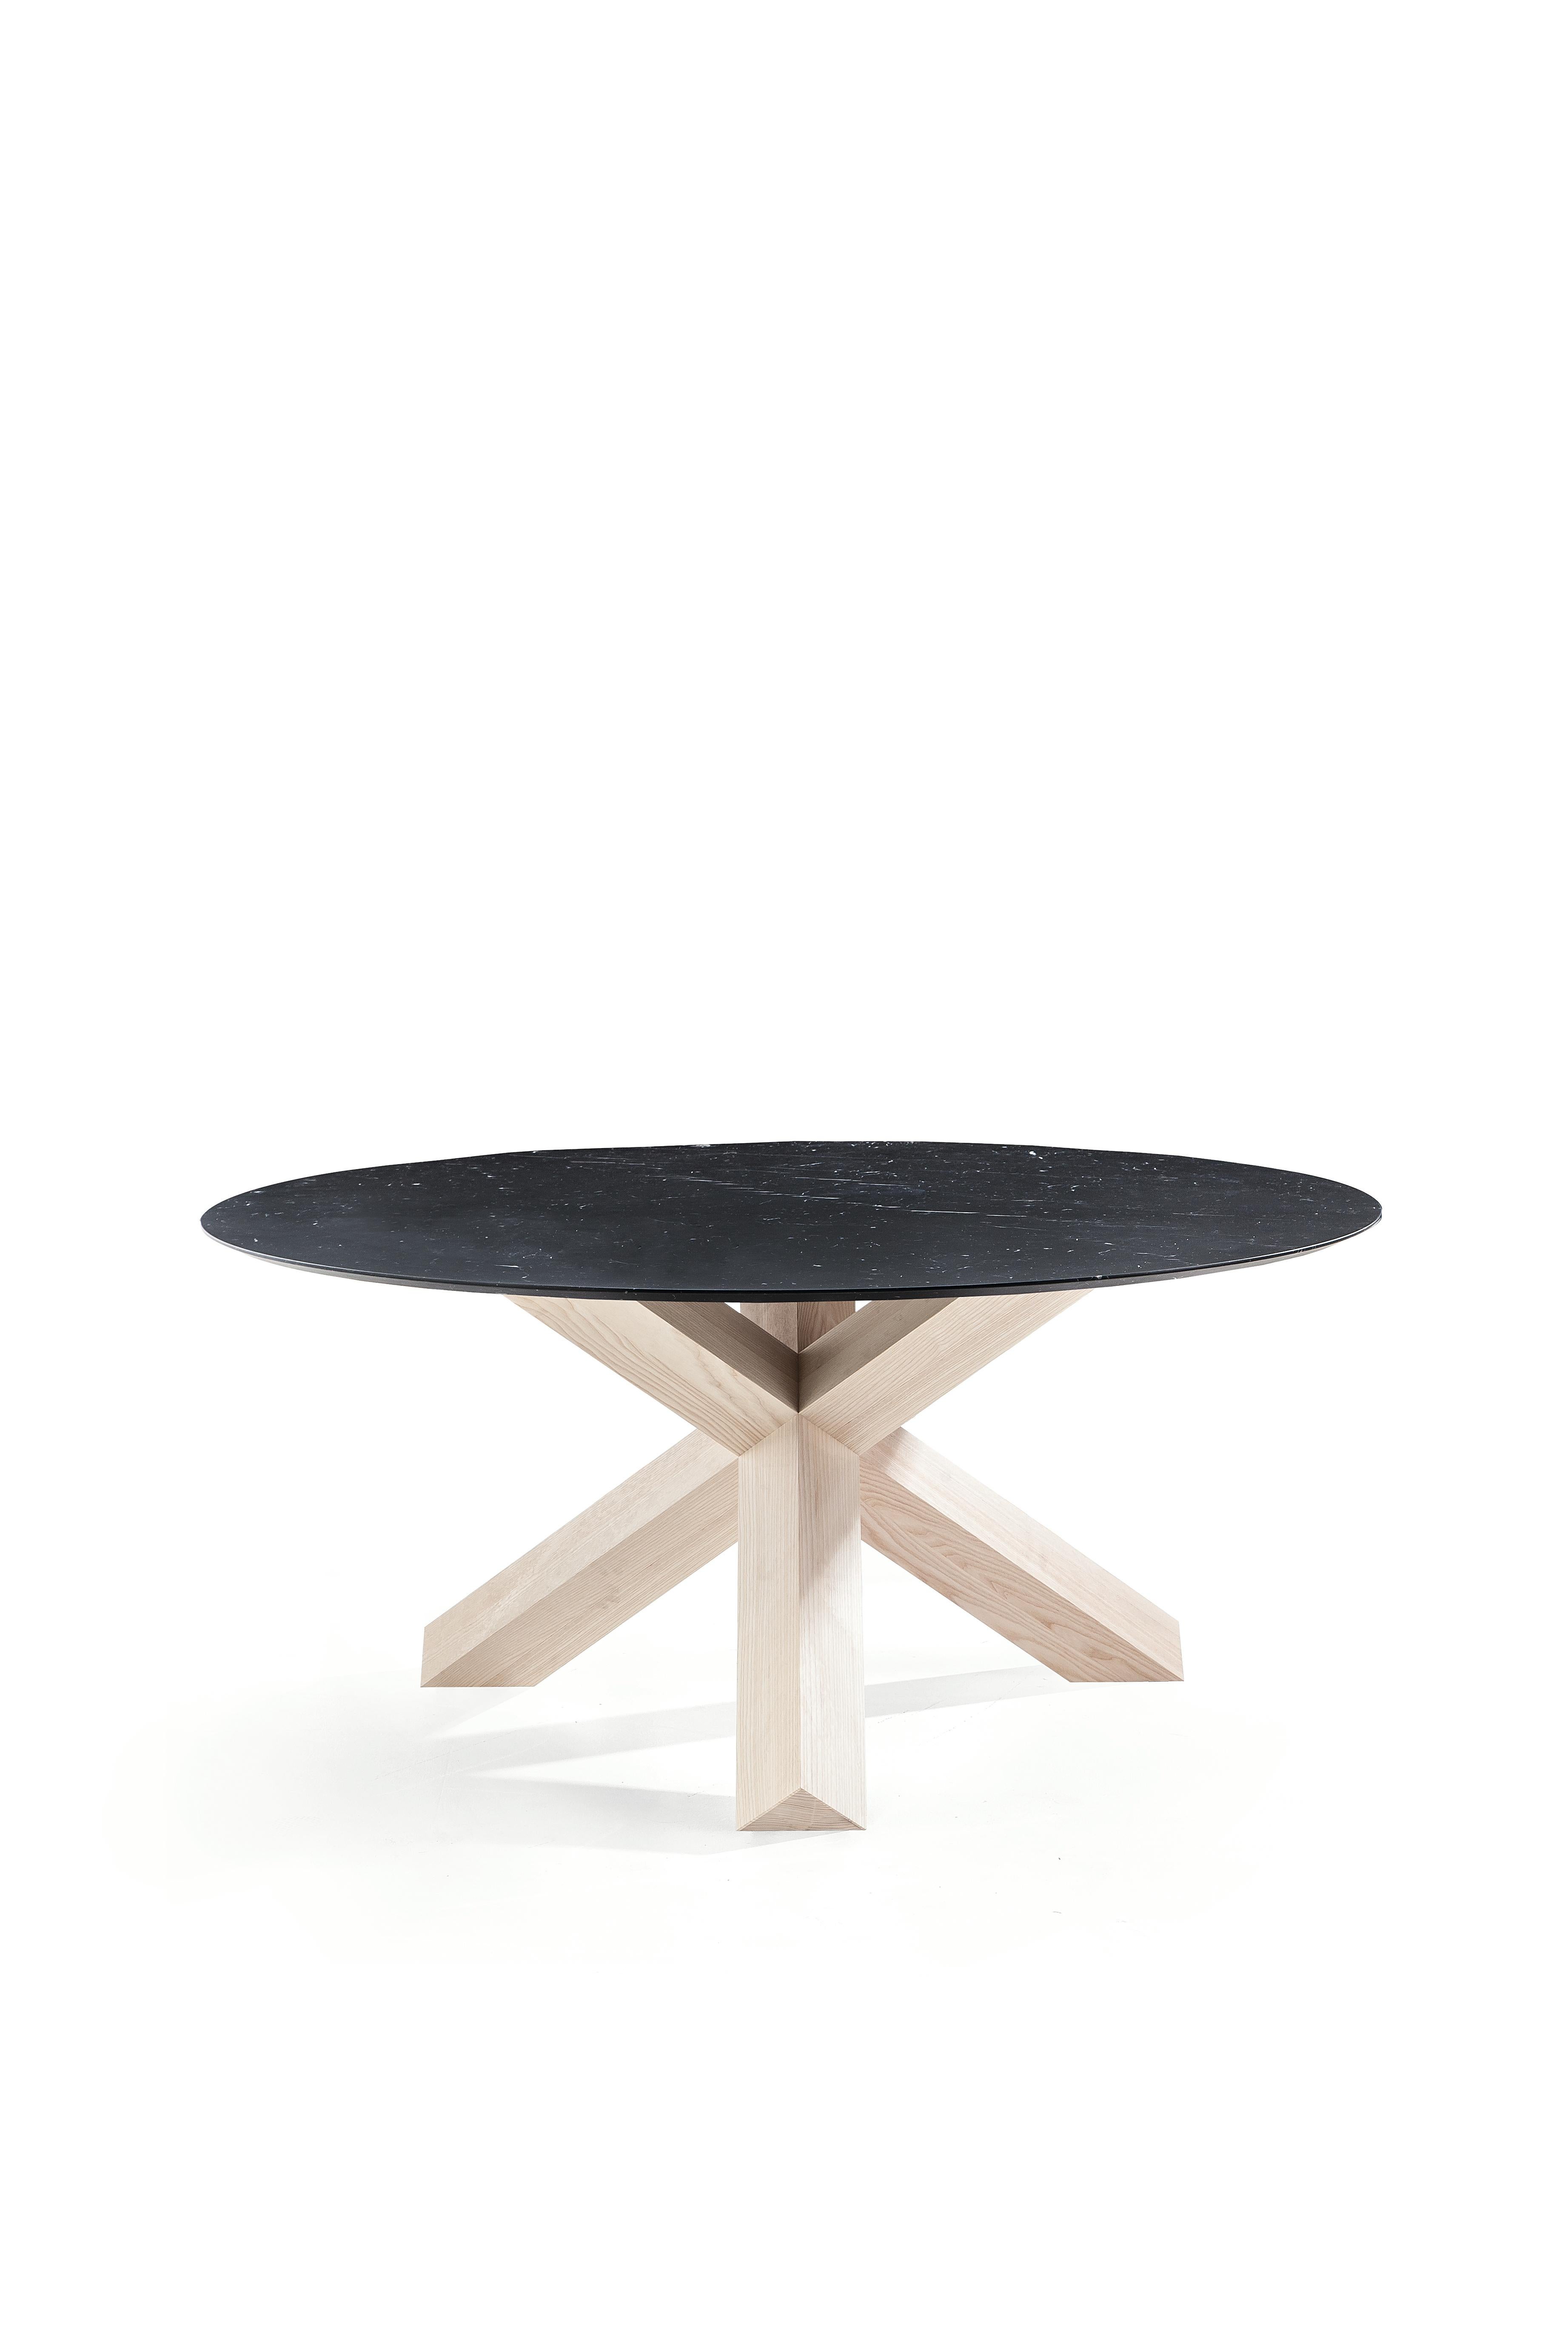 Mario Bellini La Rotonda Table by Cassina For Sale 6